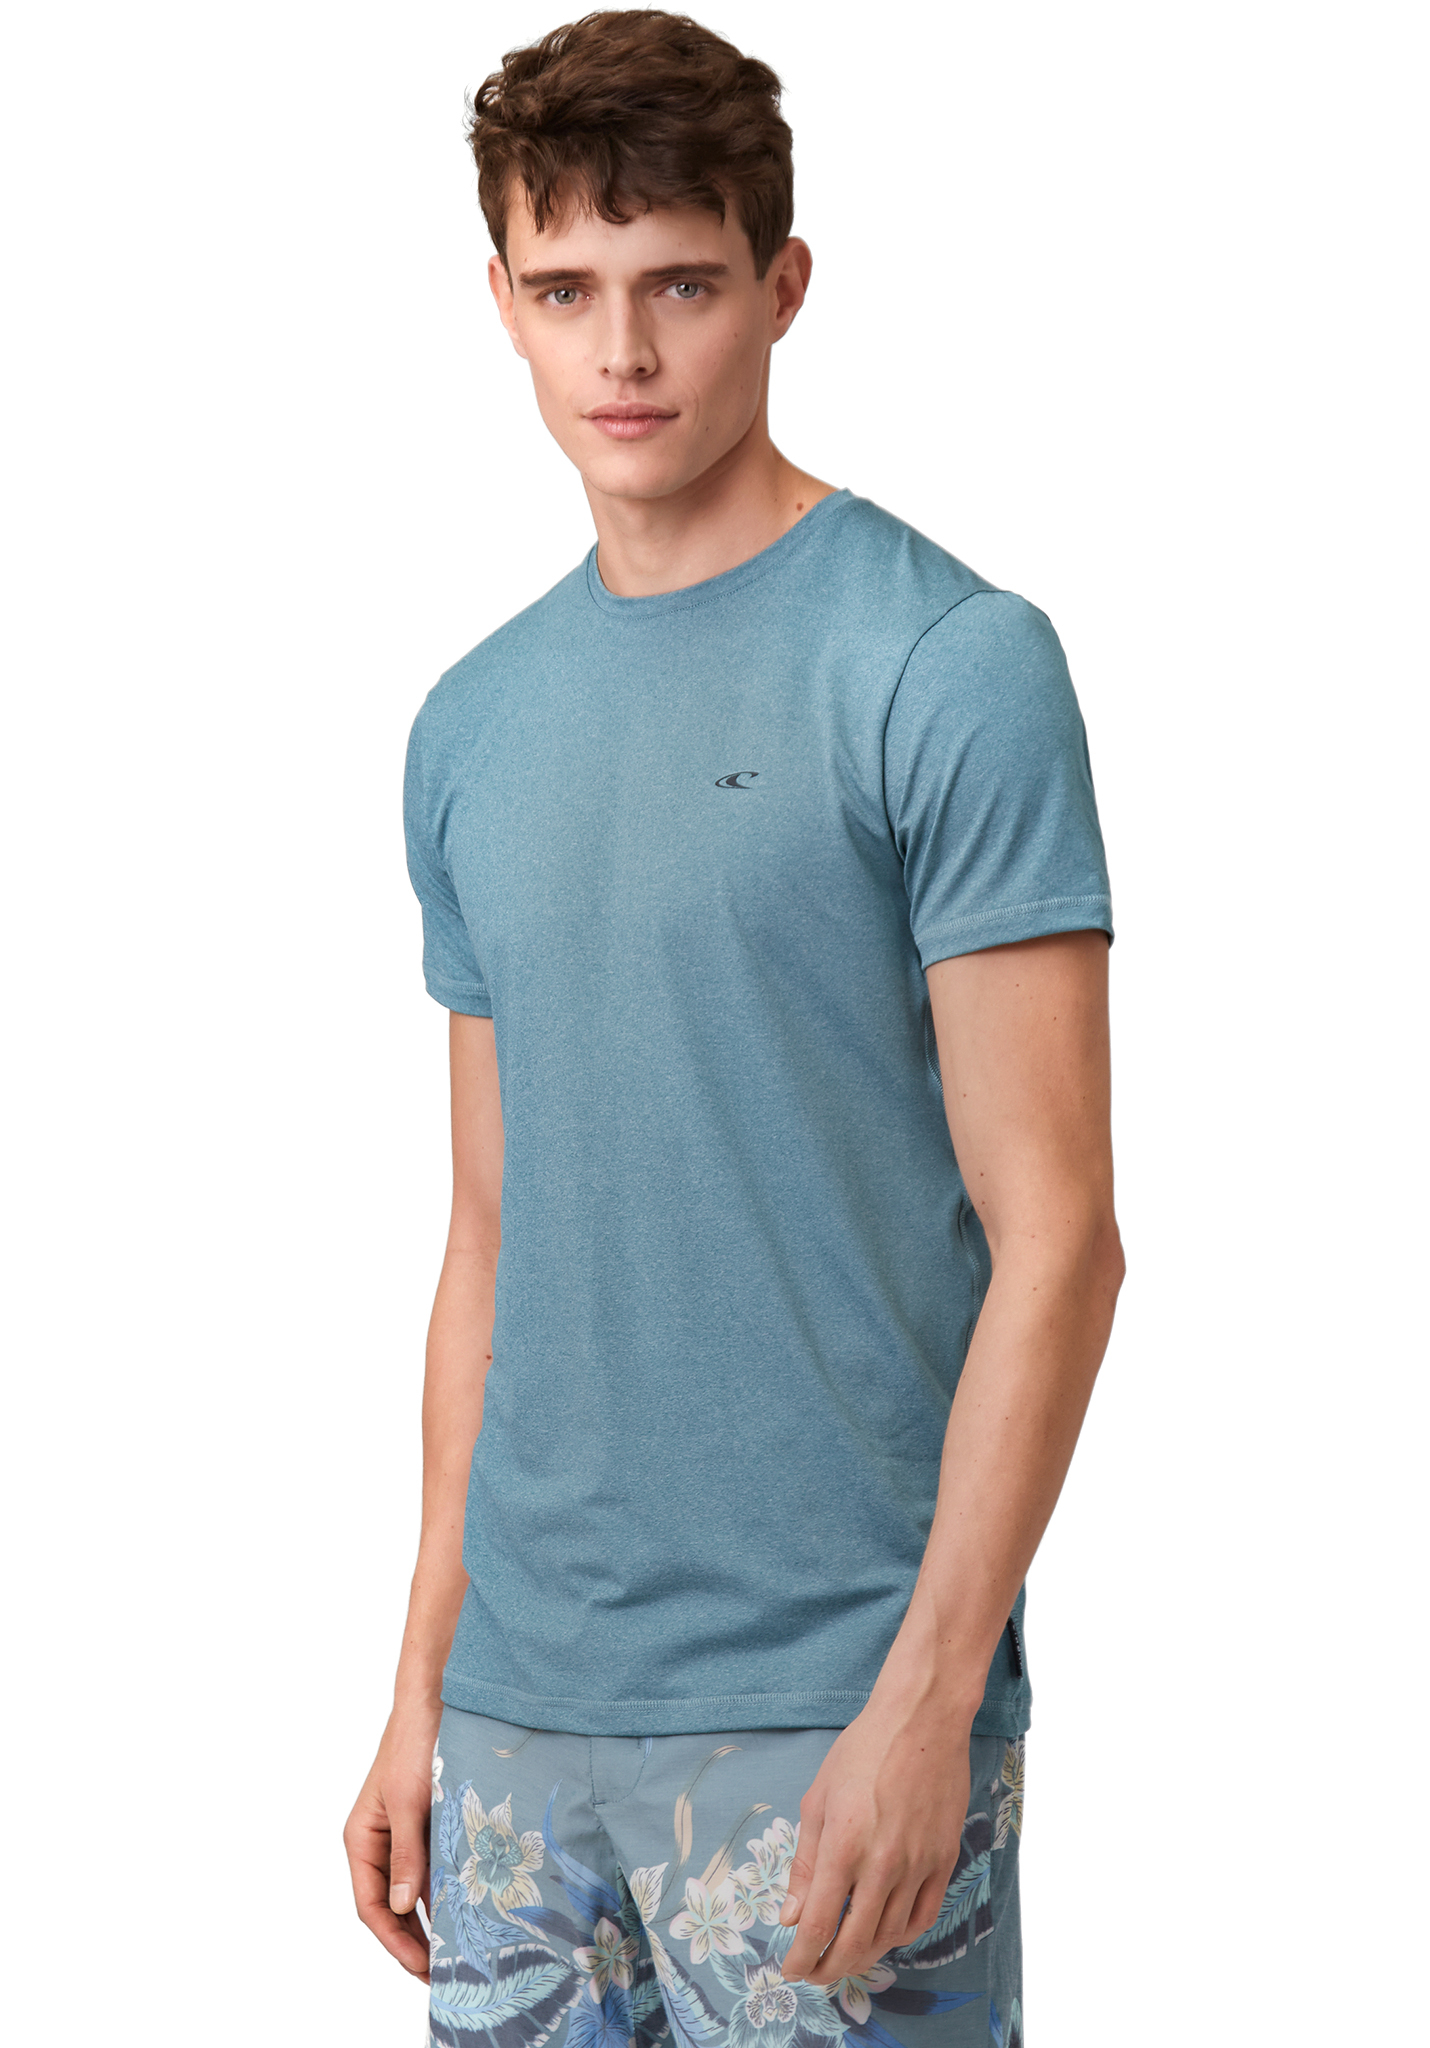 O'Neill Wave Marl Hybrid T-Shirt blau XXL